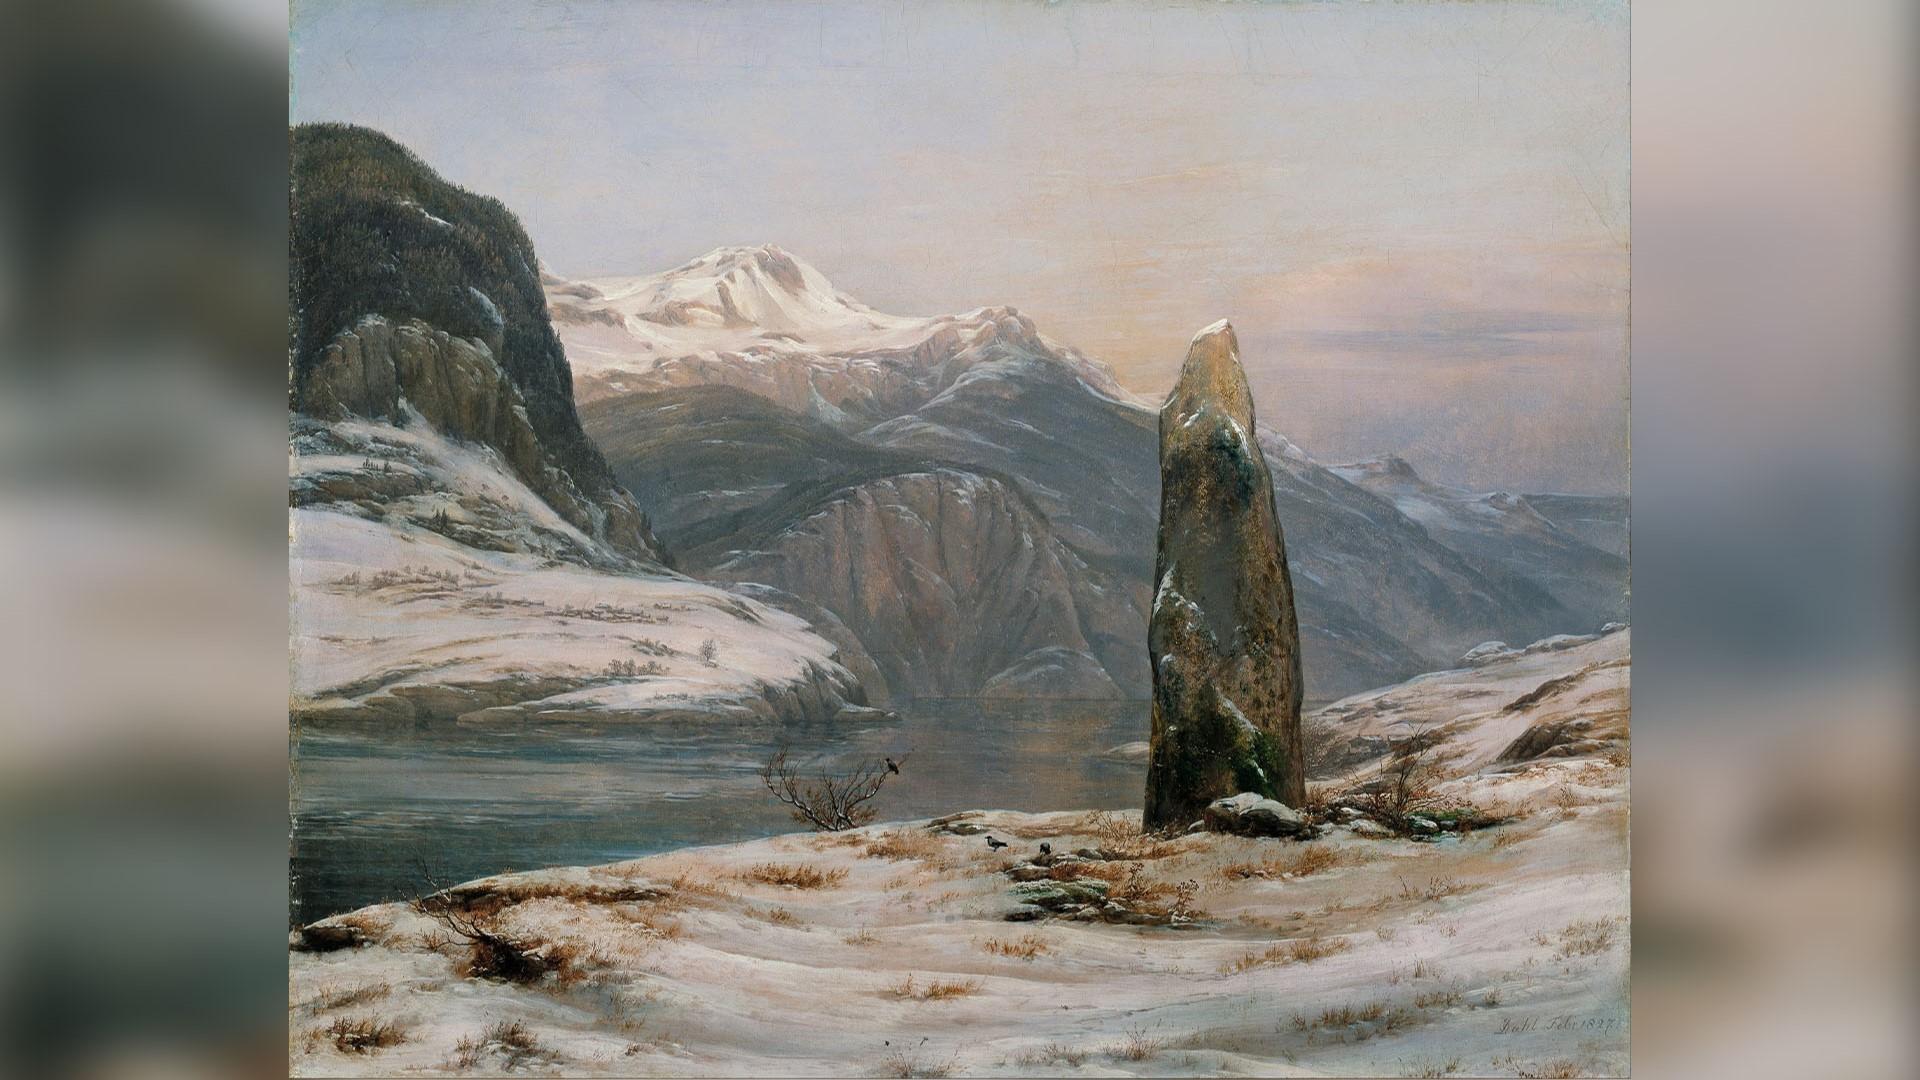 Vinter vid Sognefjorden, målning av Johan Christian Dahl (1788–1857). ”Idealiserade norska landskapsmotiv” enligt en del kritiker. Foto: Public Domain